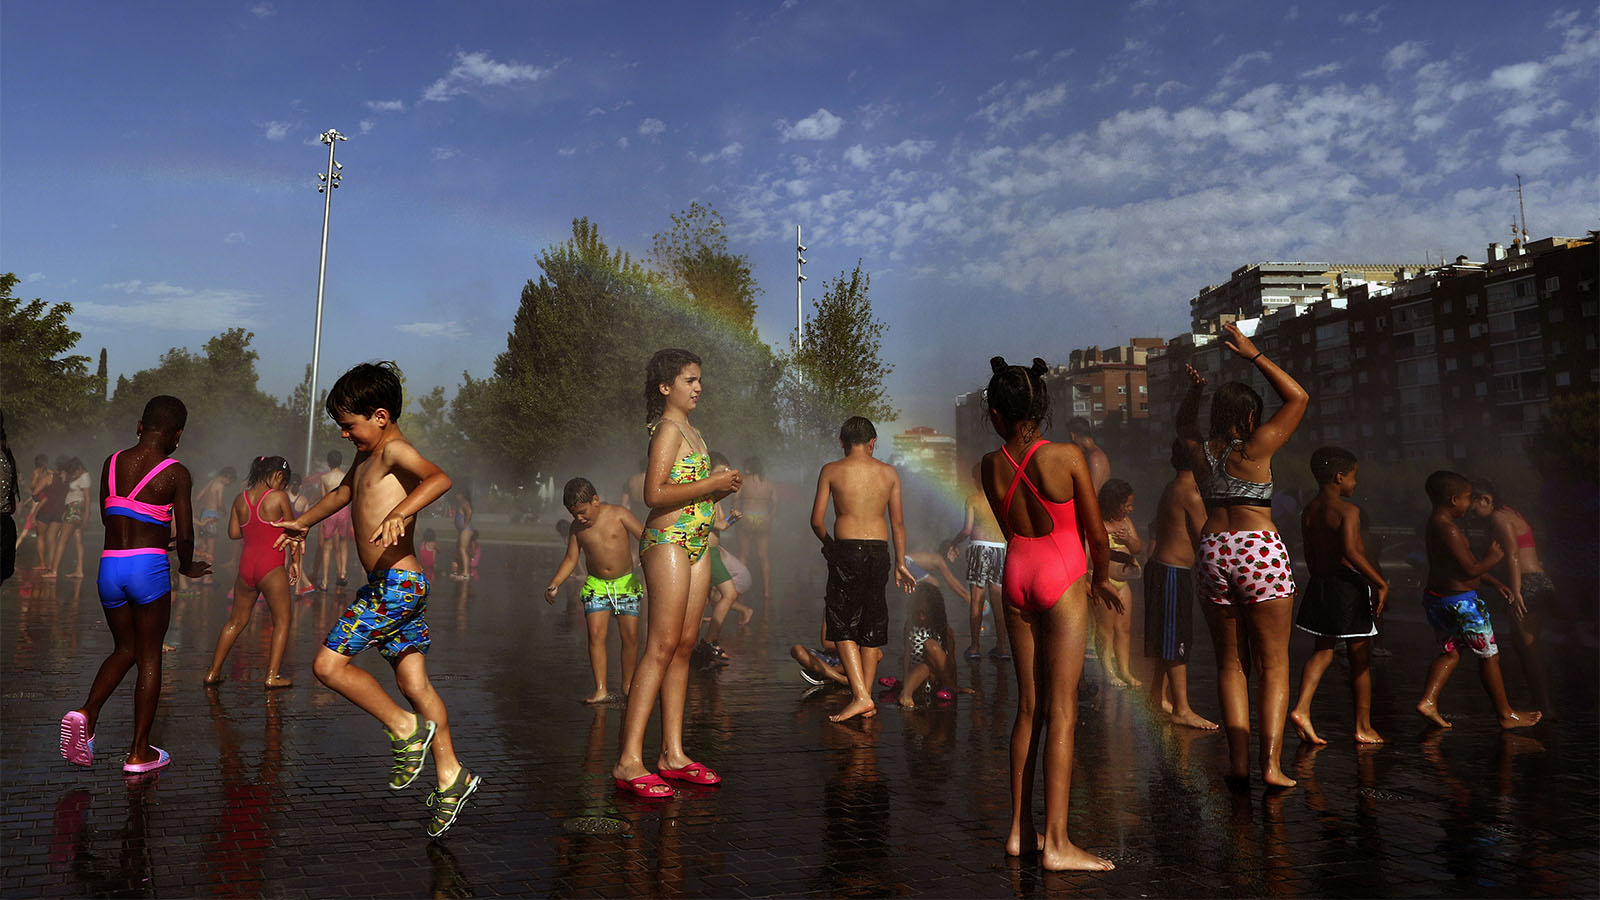 ילדים מבלים במזרקה בפארק במדריד במהלך גל חום קיצוני באירופה, יוני 2019 (AP Photo/Manu Fernandez)